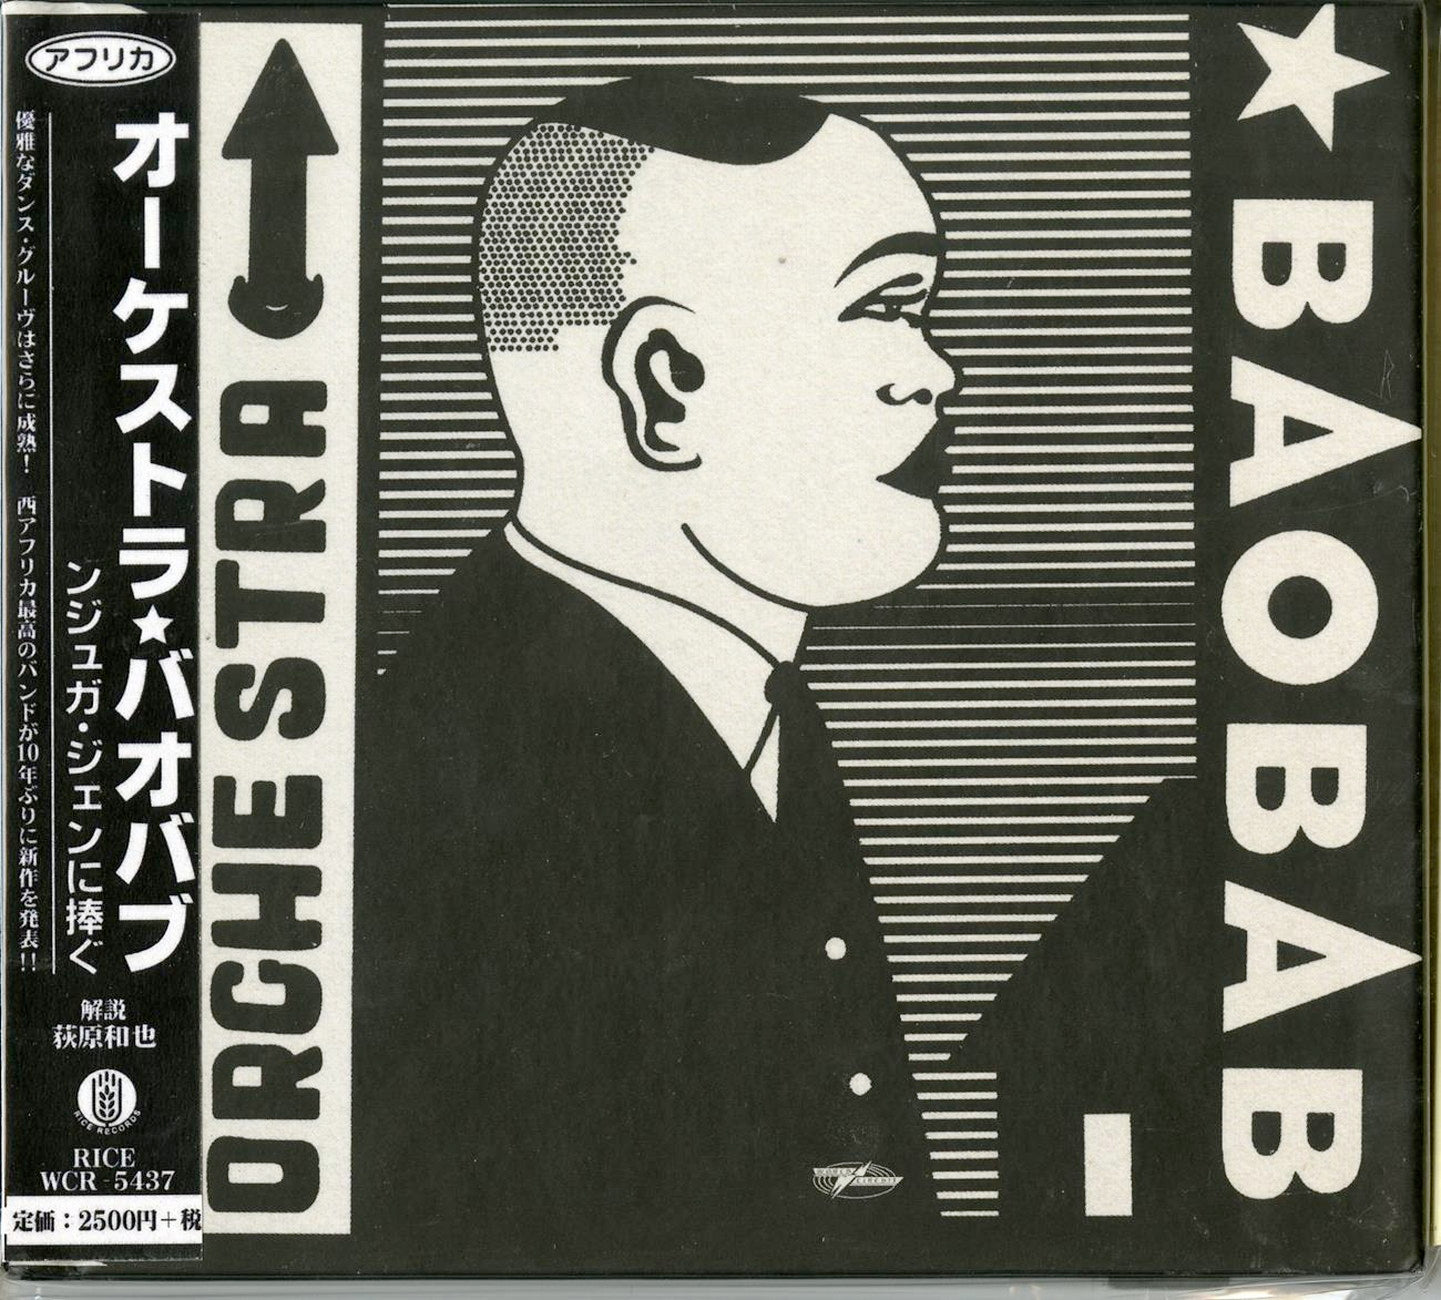 Orchestra Baobab - Tribute To Ndiouga Dieng - Japan CD